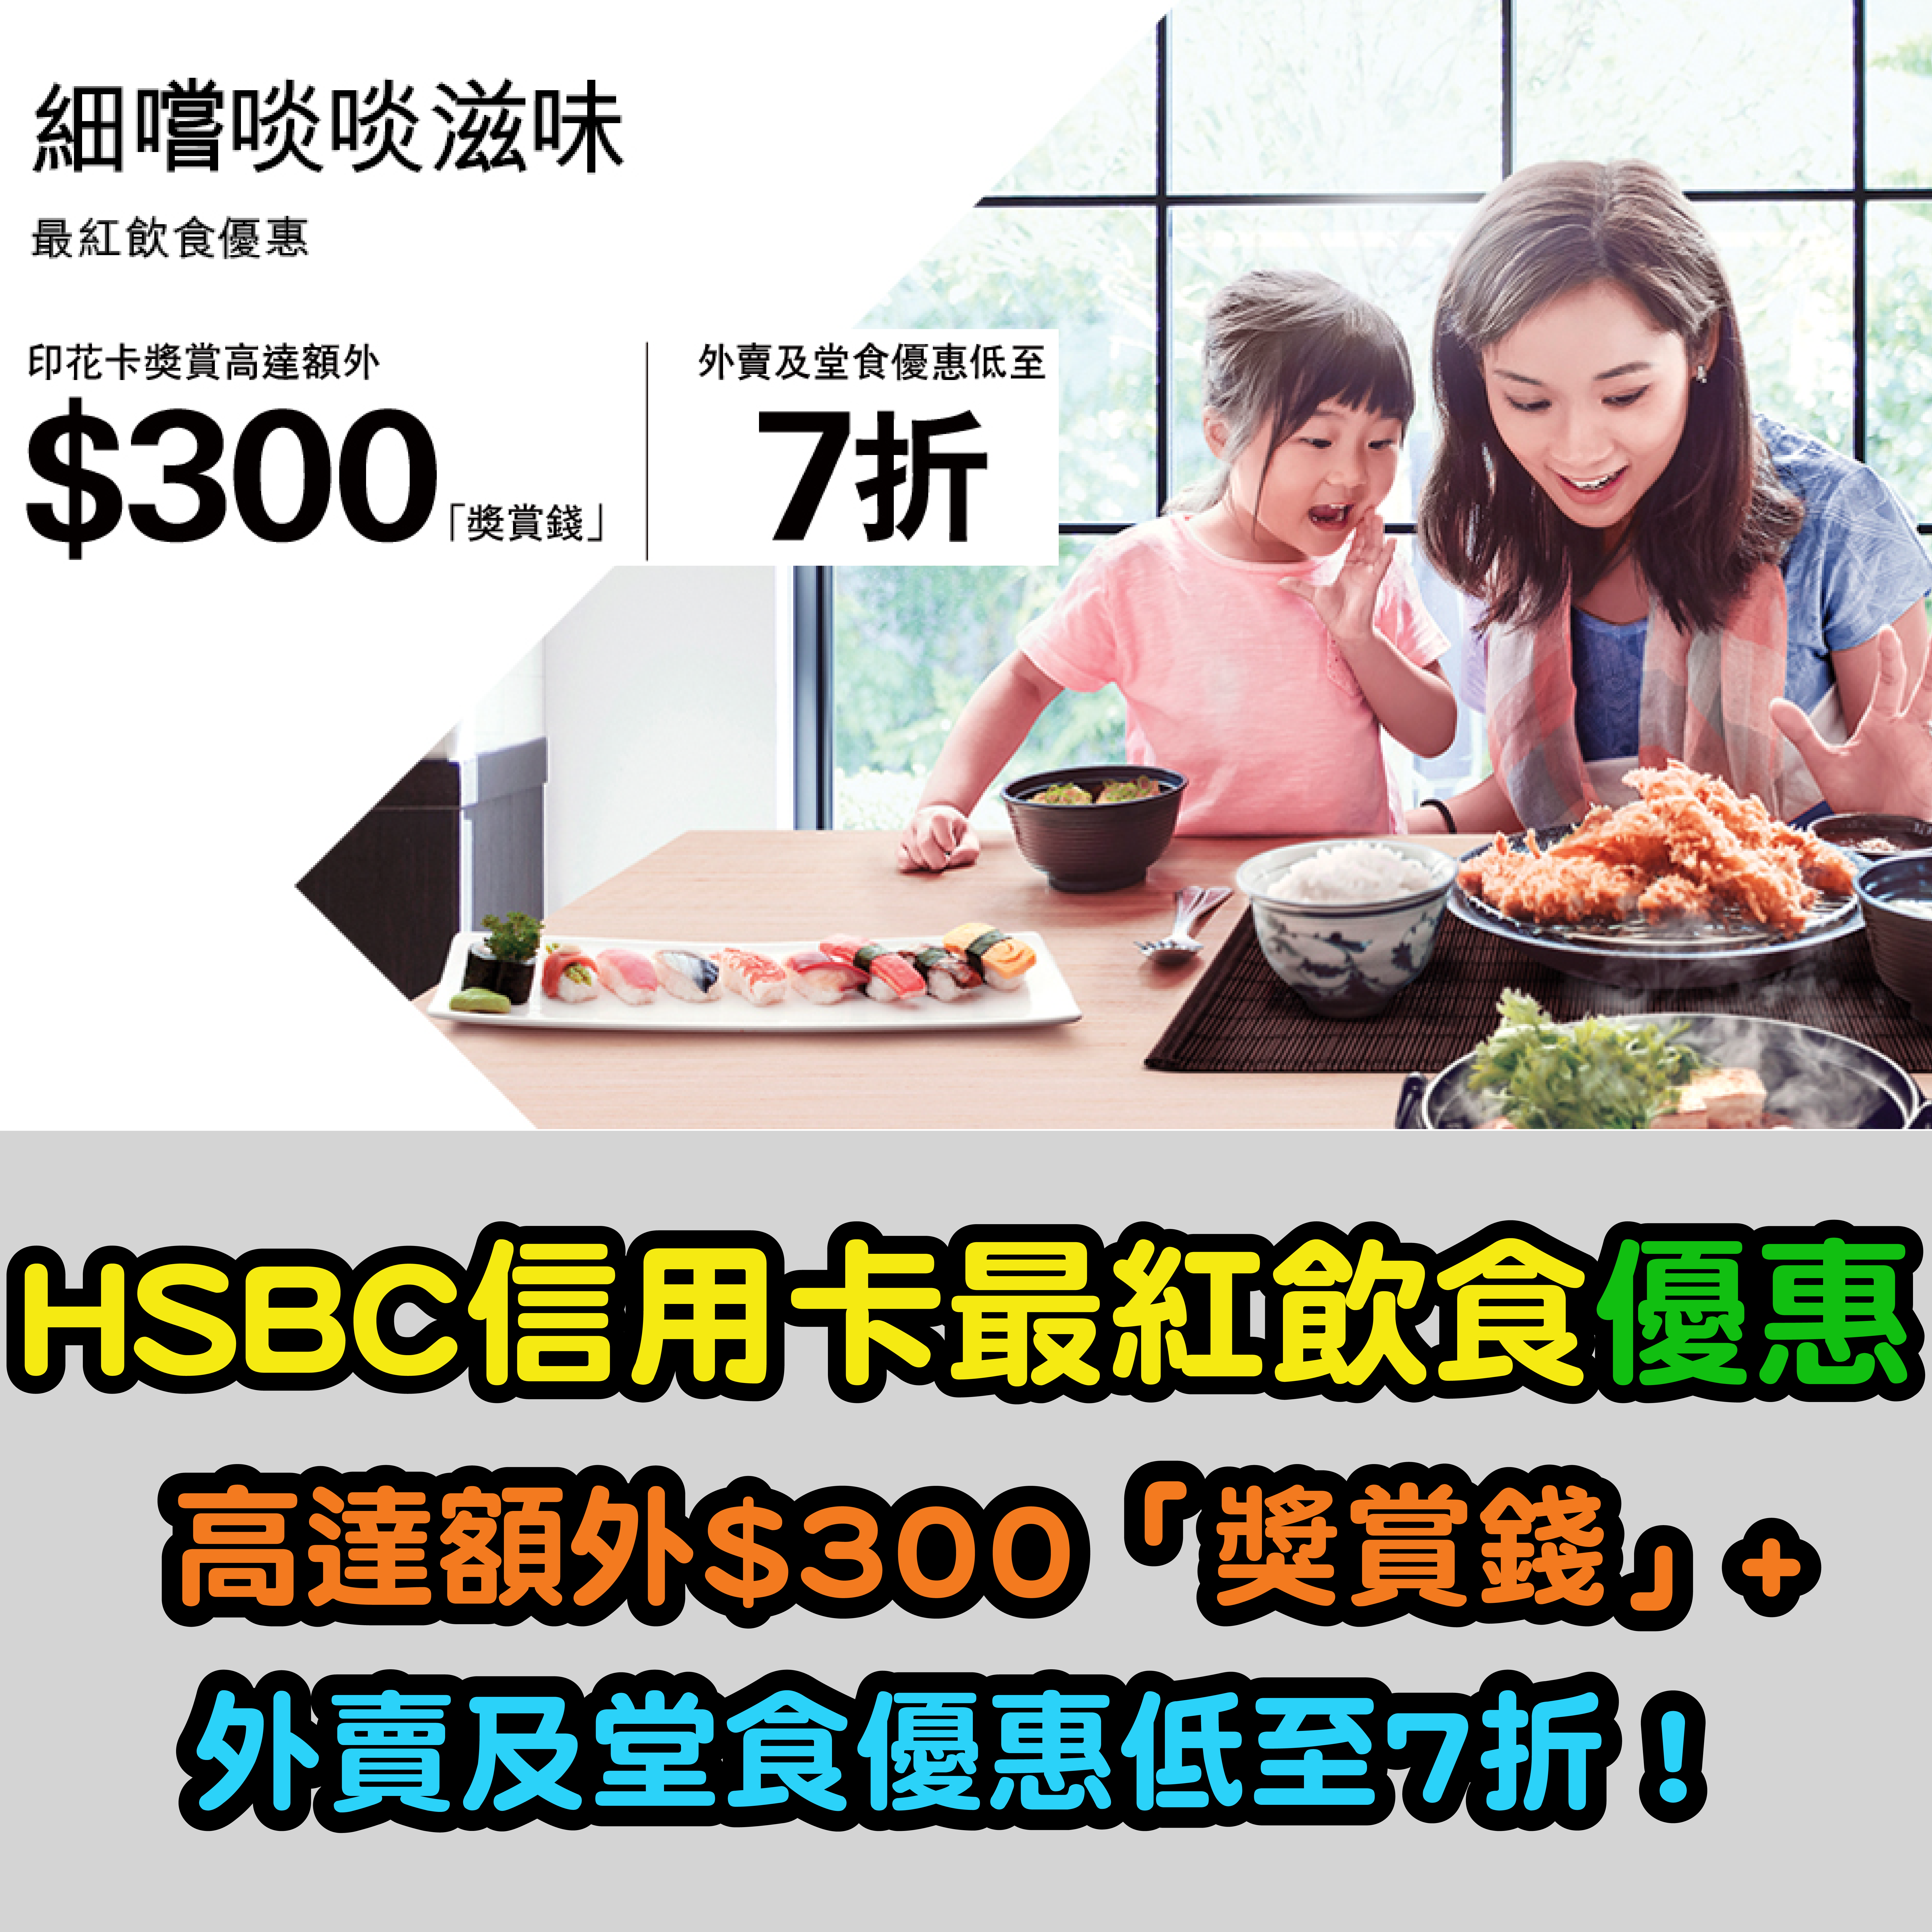 【HSBC信用卡最紅飲食優惠】高達額外$300「獎賞錢」+ 外賣及堂食優惠低至7折！